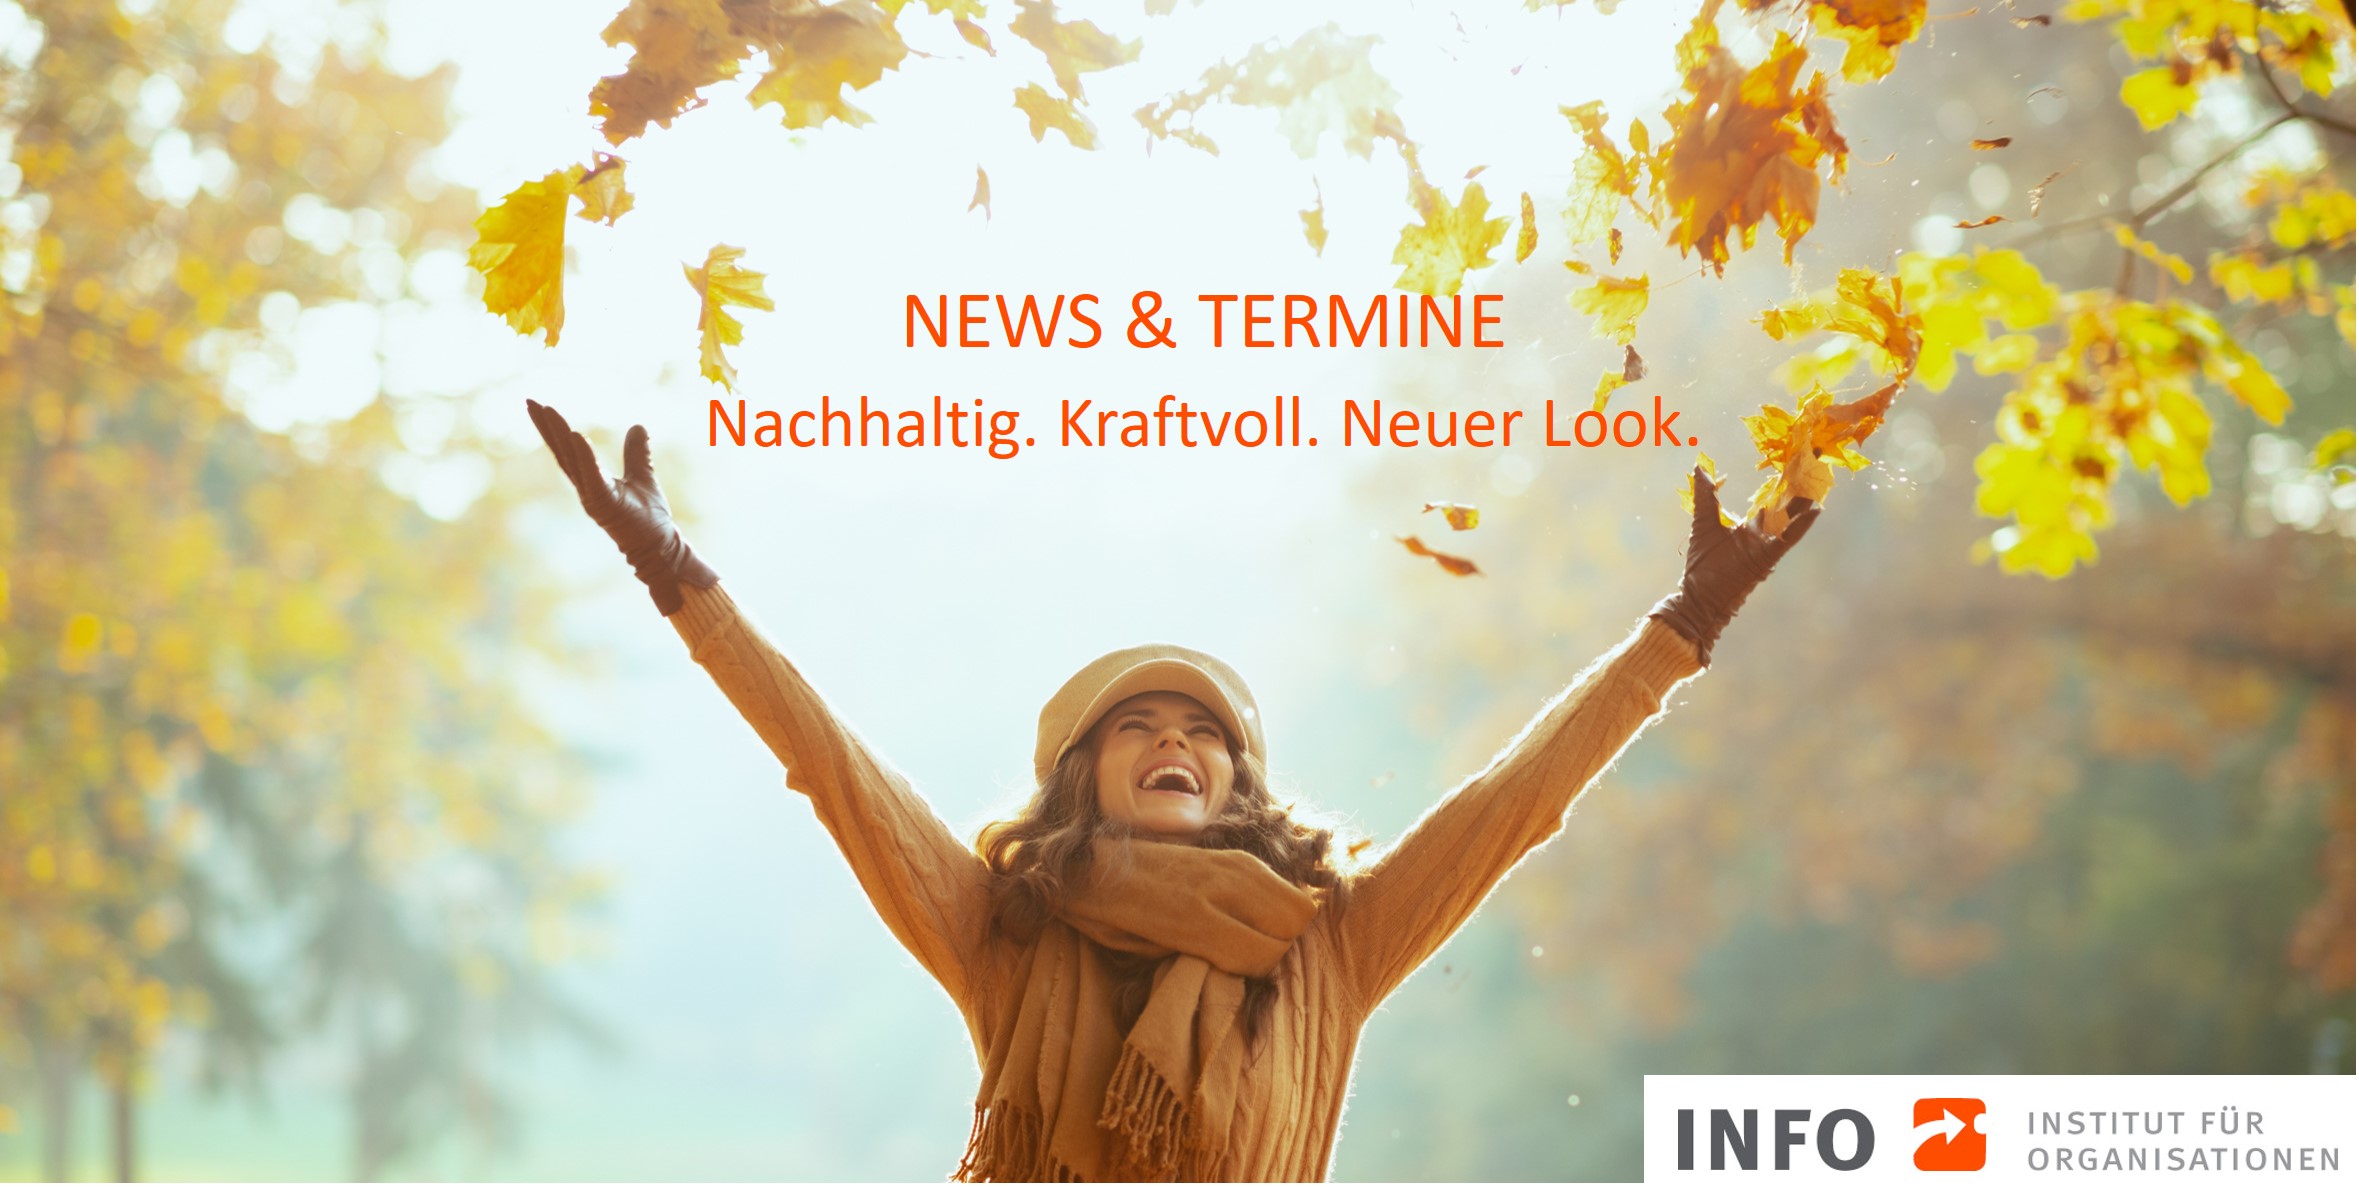 Newsletter: Nachhaltig I Kraftvoll I Neuer Look: Ihr News- und Terminupdate für den Herbst